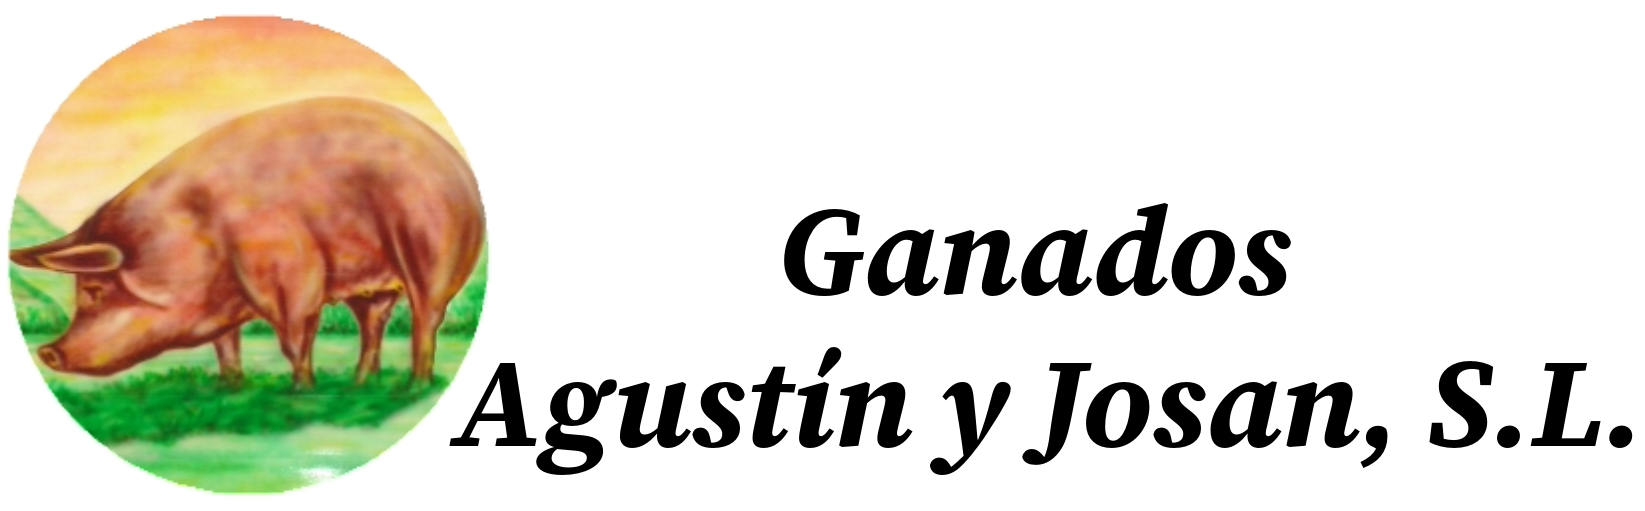 GANADOS AGUSTIN Y JOSAN, S.L.